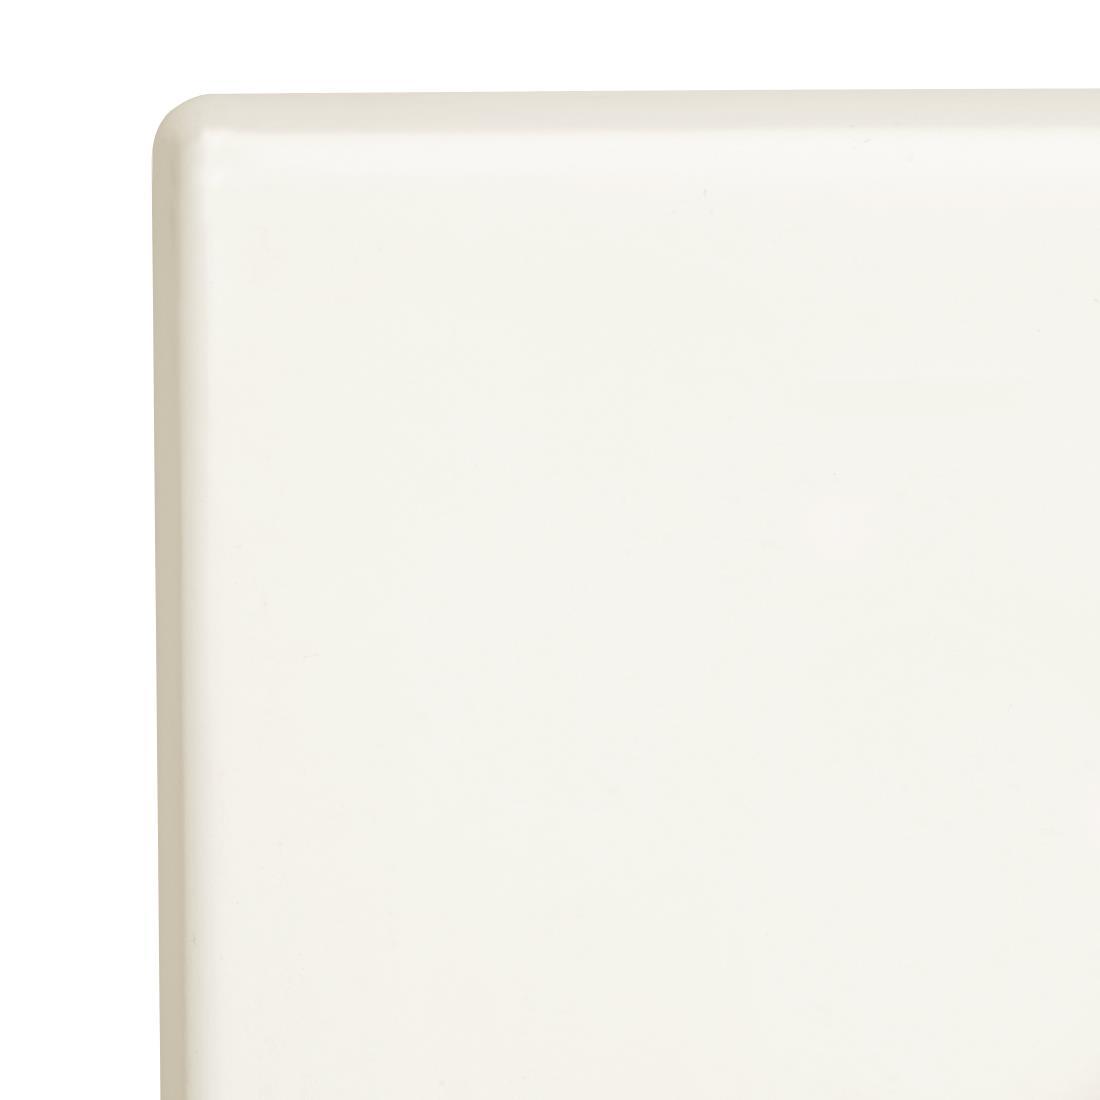 Bolero Pre-drilled Square Table Top White 700mm - GG641  - 3